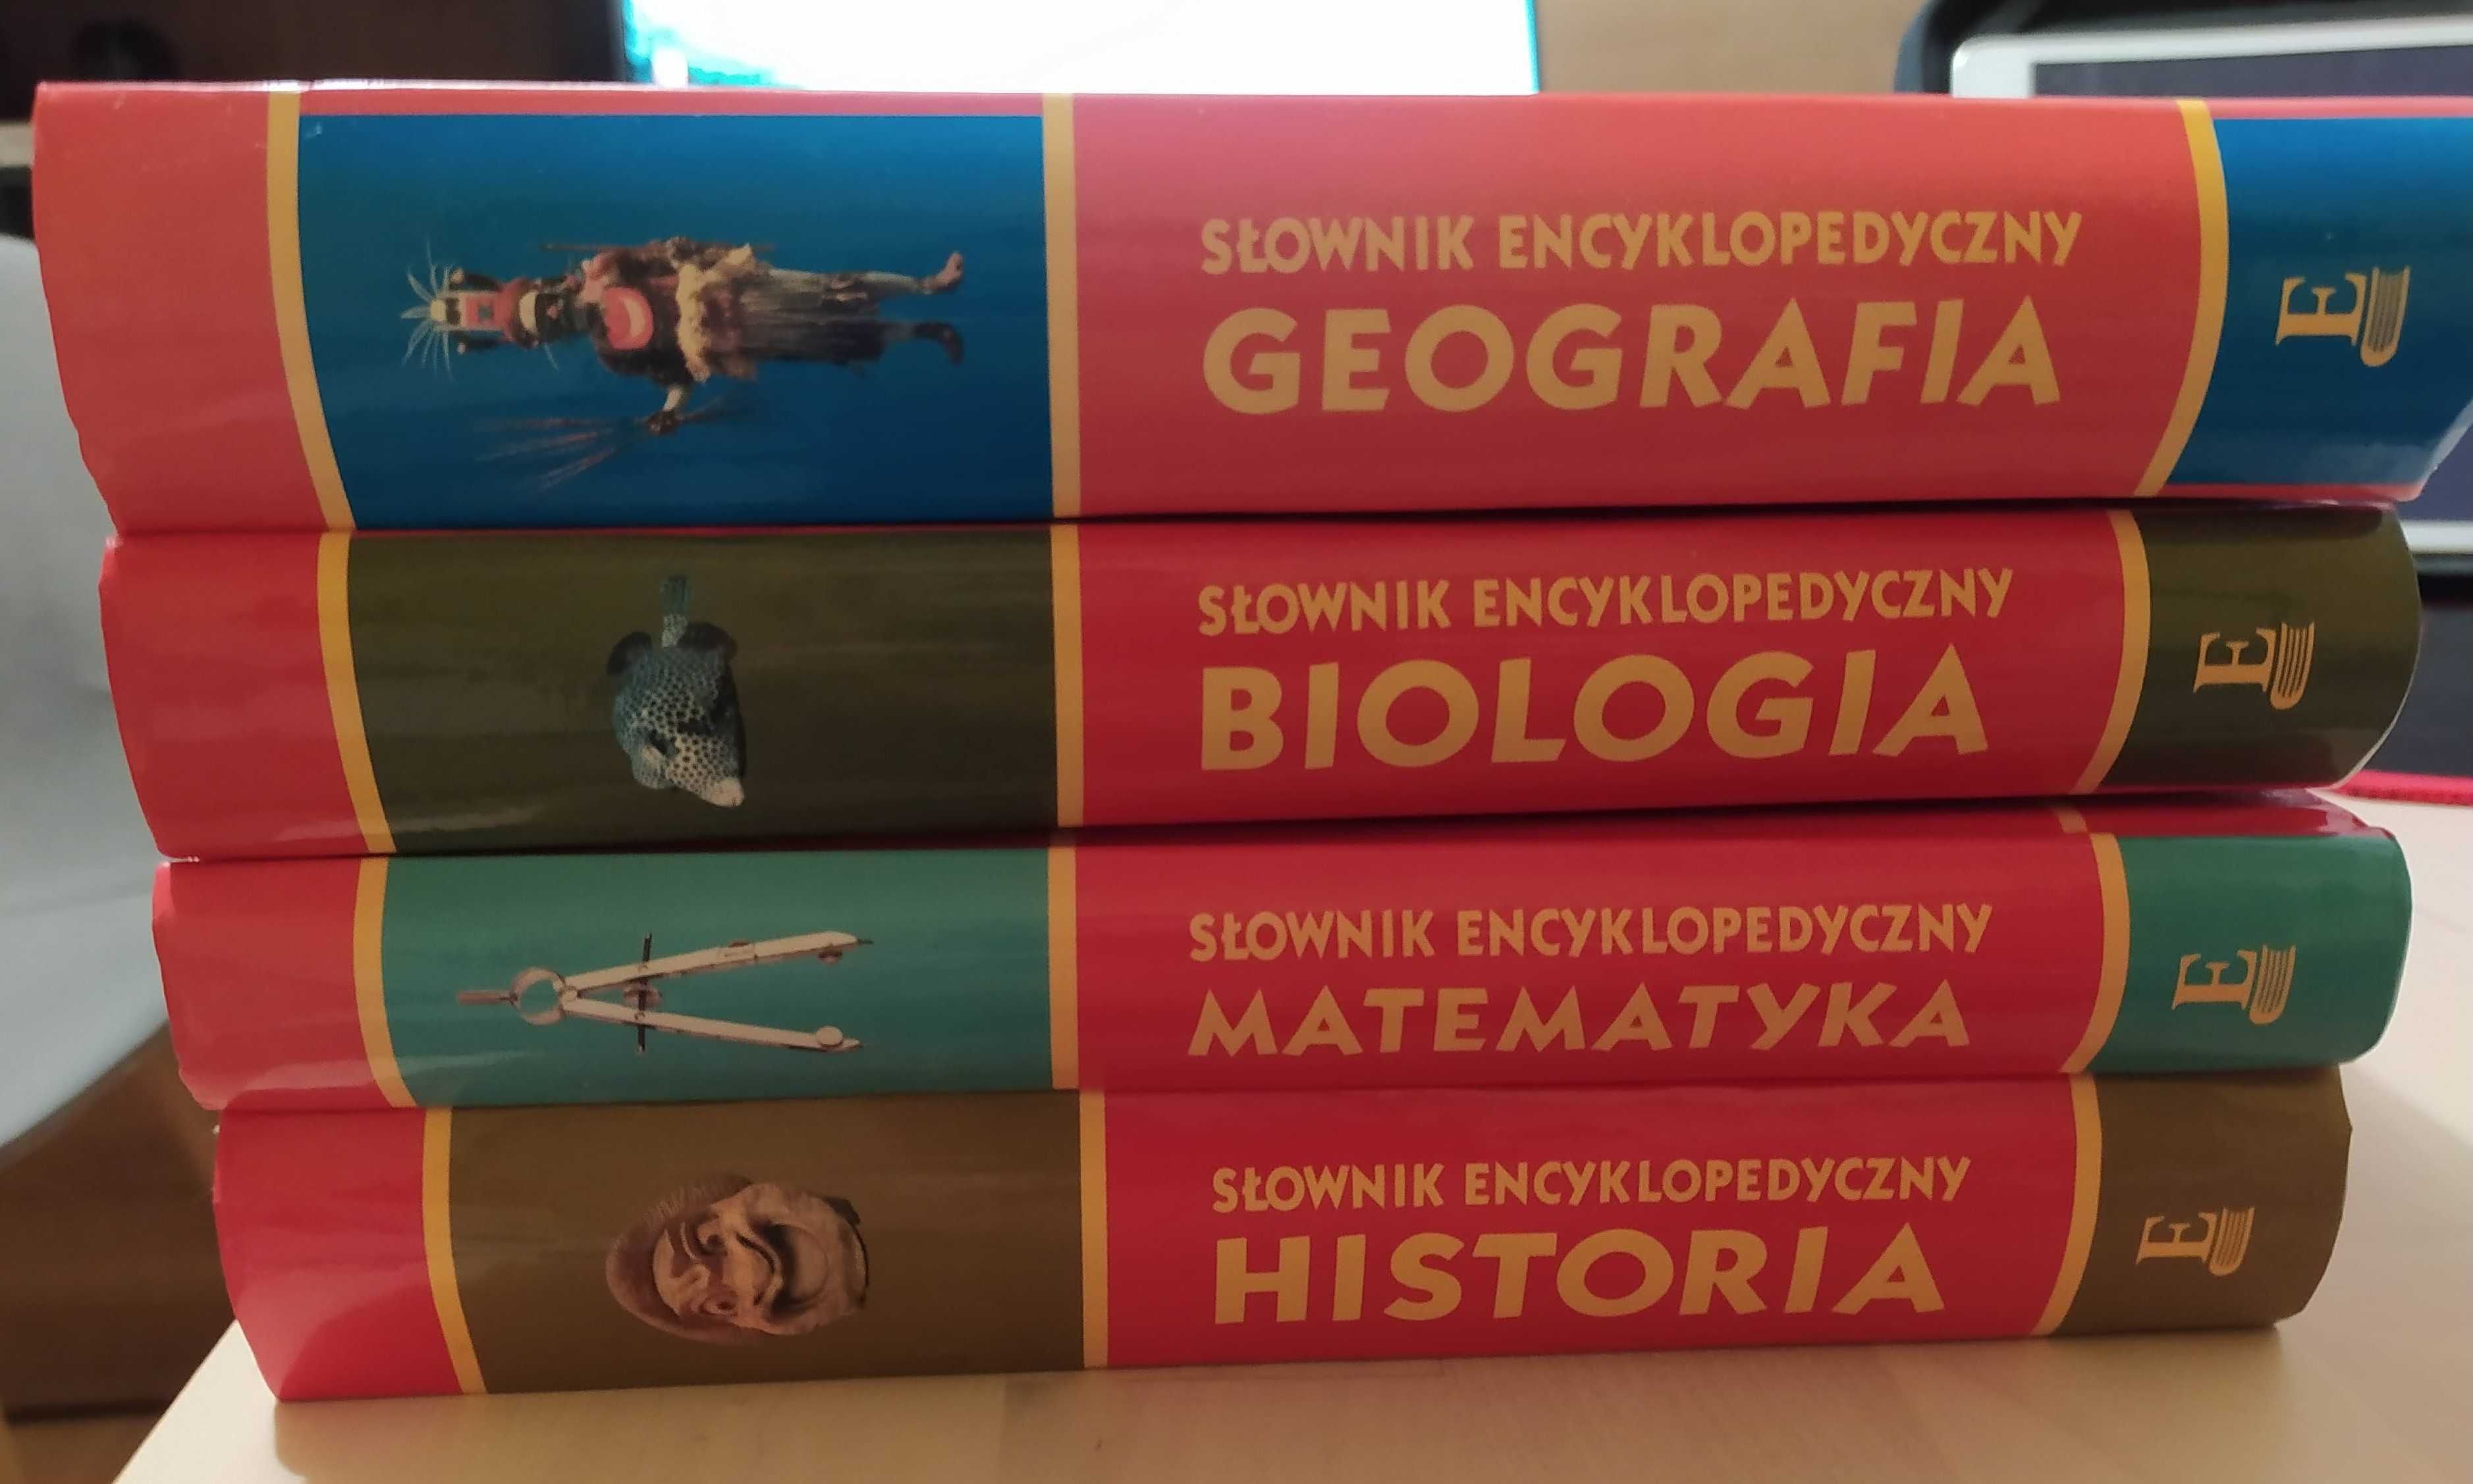 Słowniki encyklopedyczne Geografia, Biologia, Matematyka, Historia